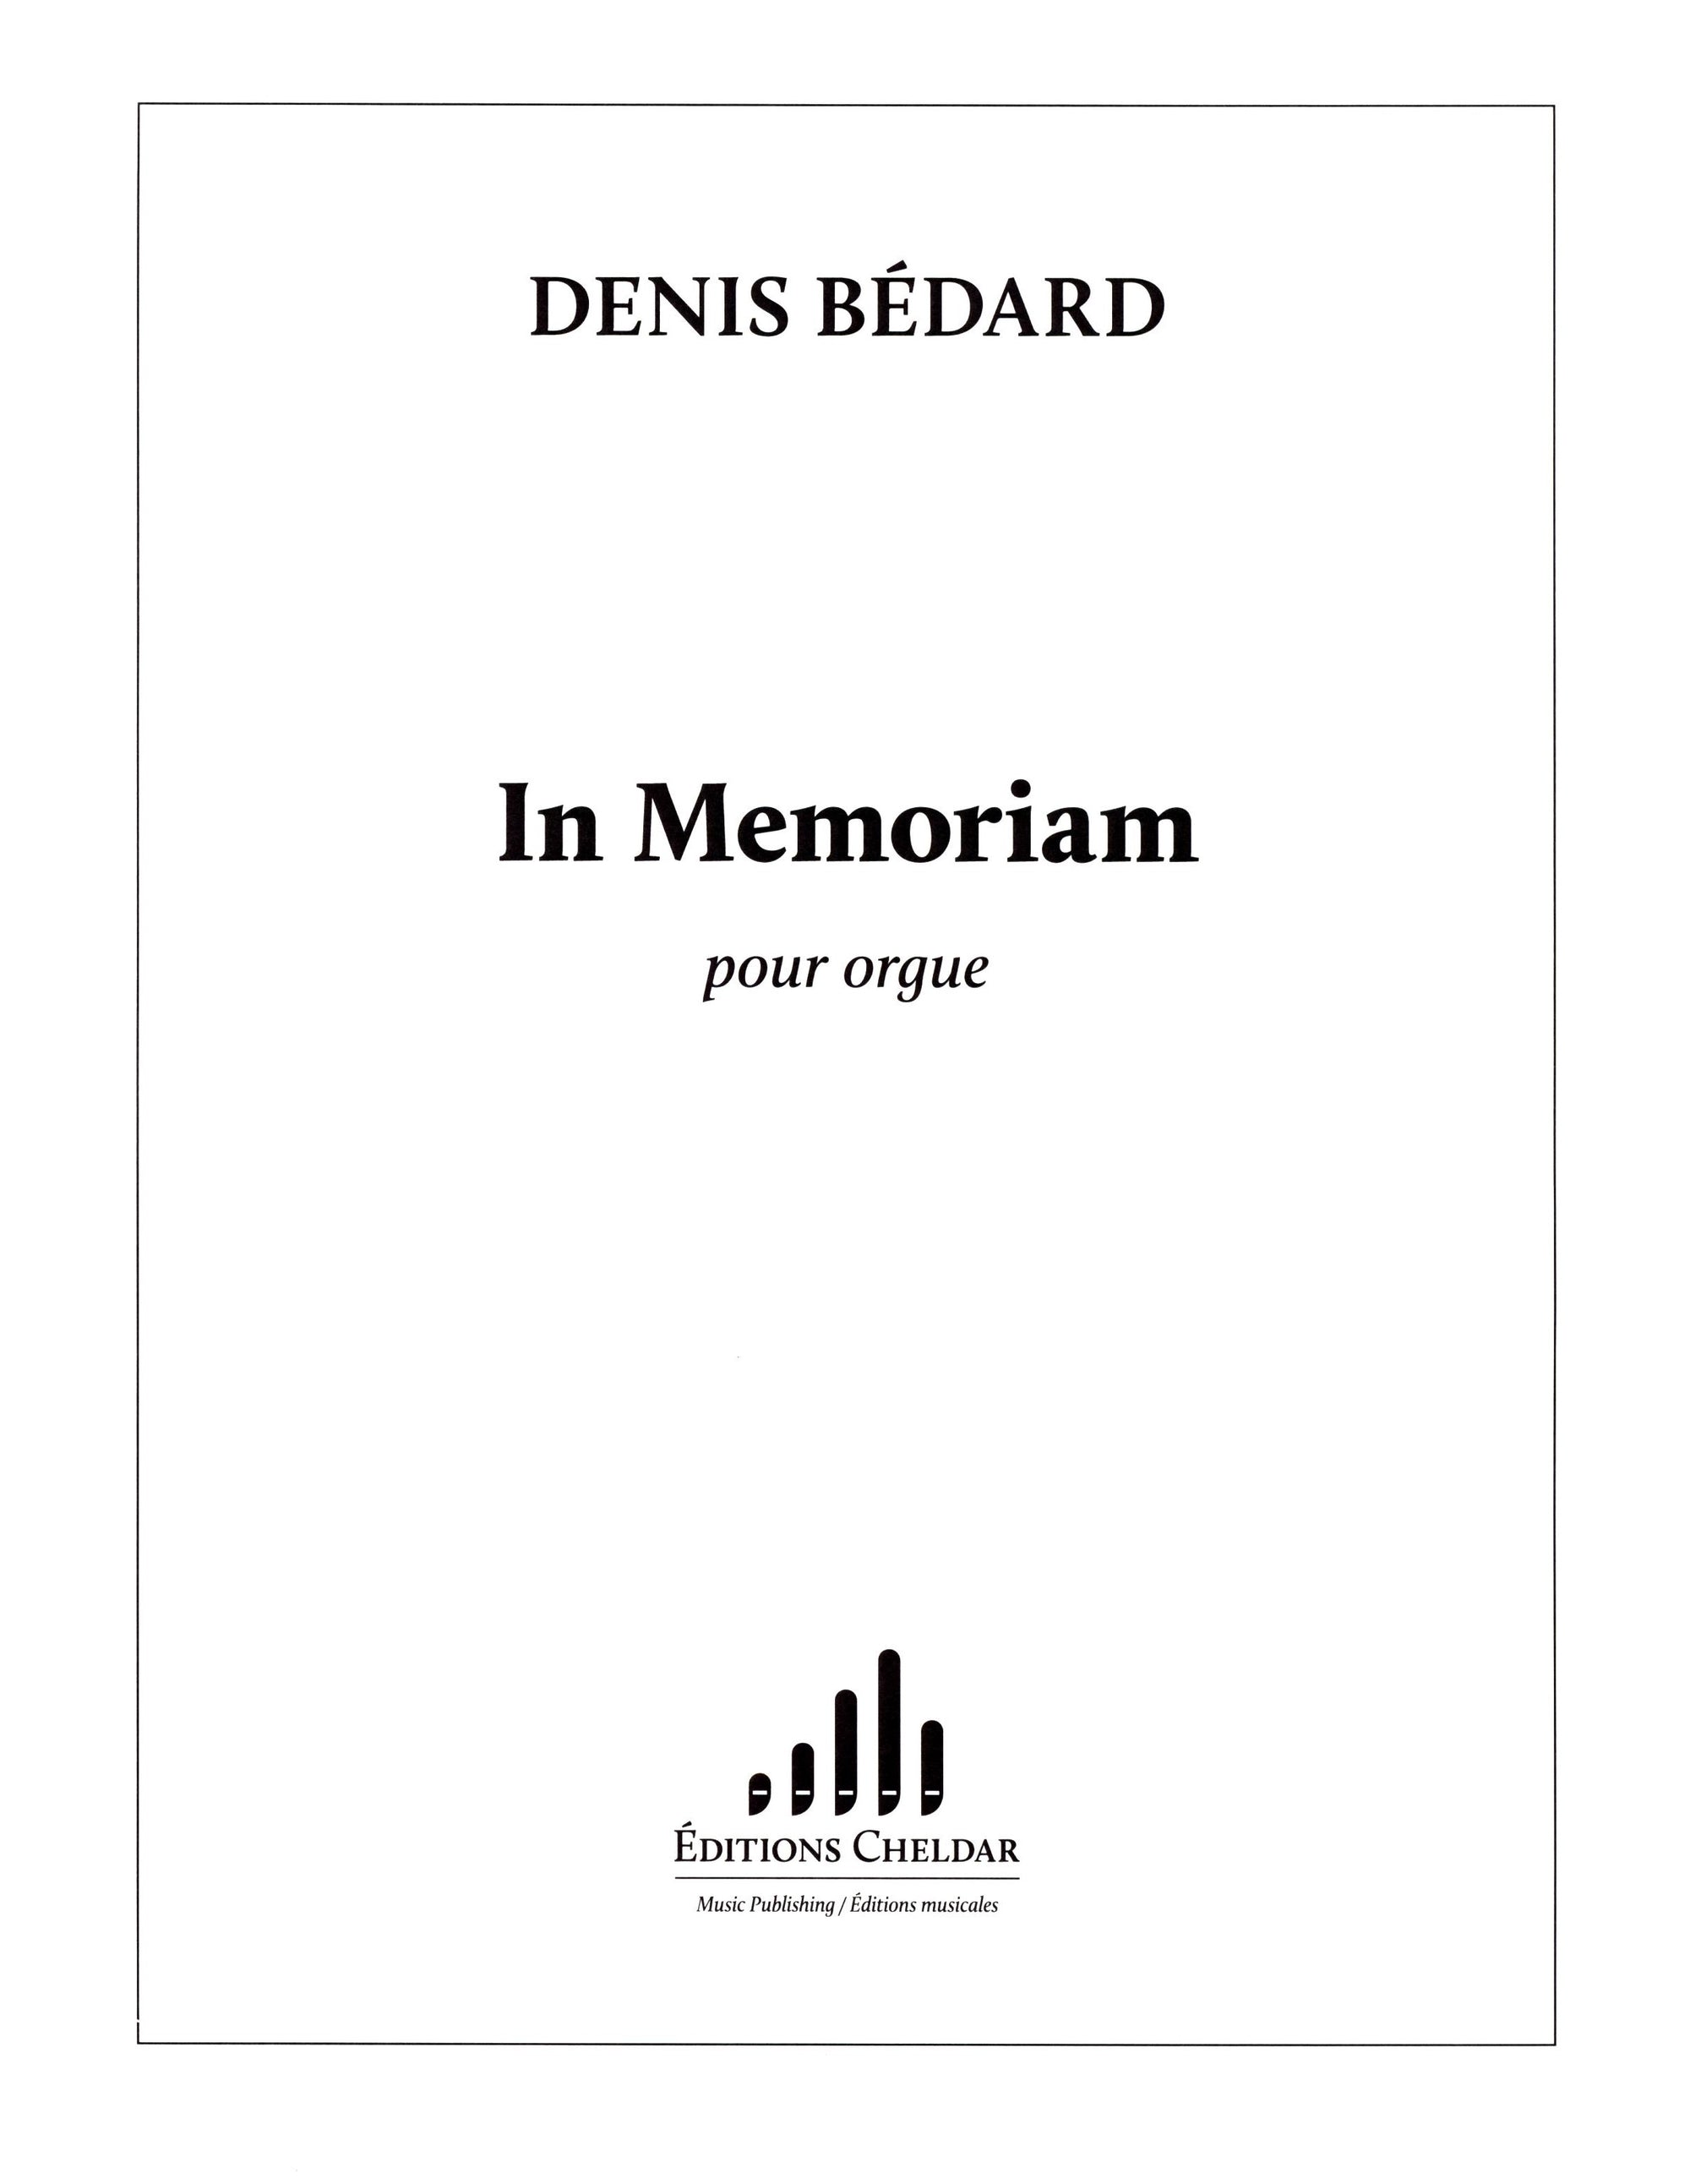 Bédard: In Memoriam